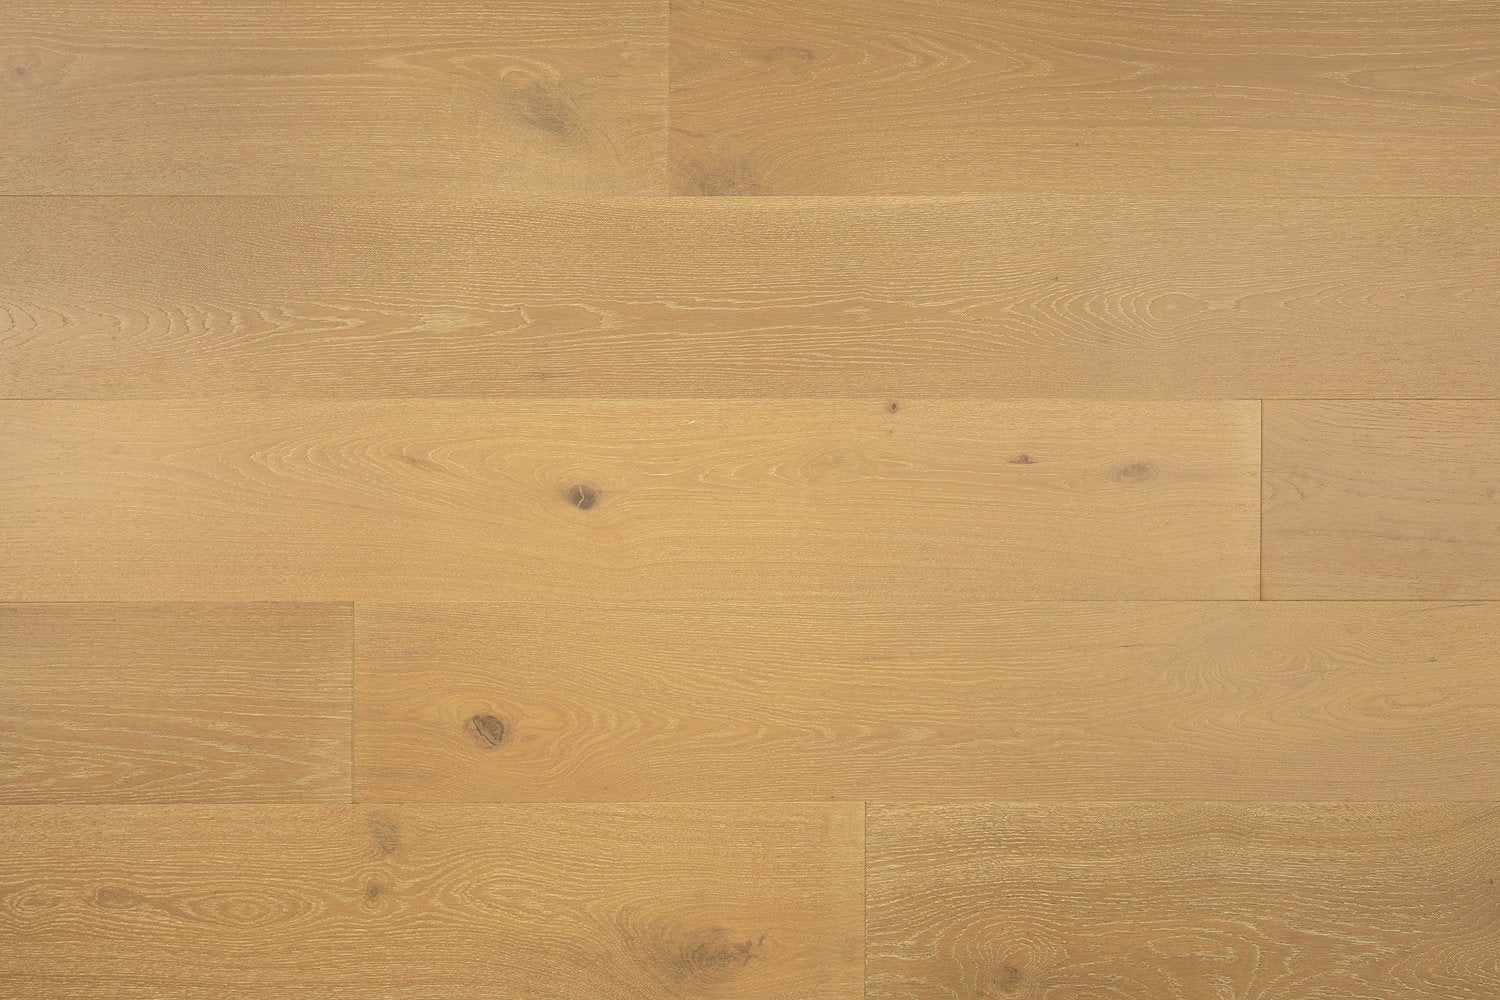 surface group artisan en bois brittany ritz cove white oak engineered hardwood flooring plank straight.jpg